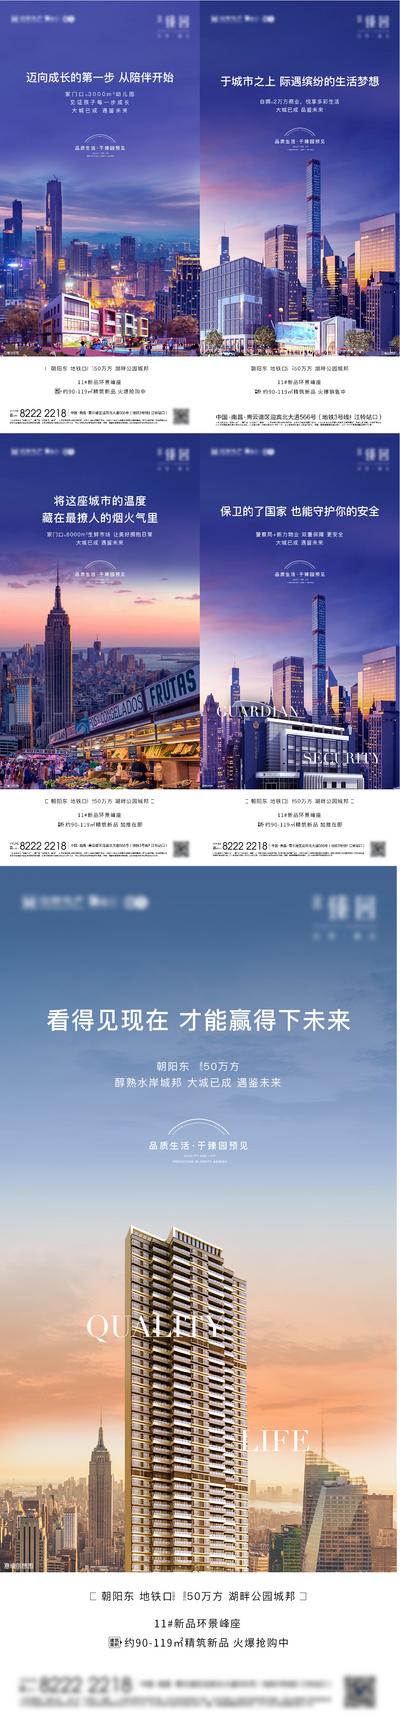 南门网 广告 海报 地产 地标 城市 系列 起势